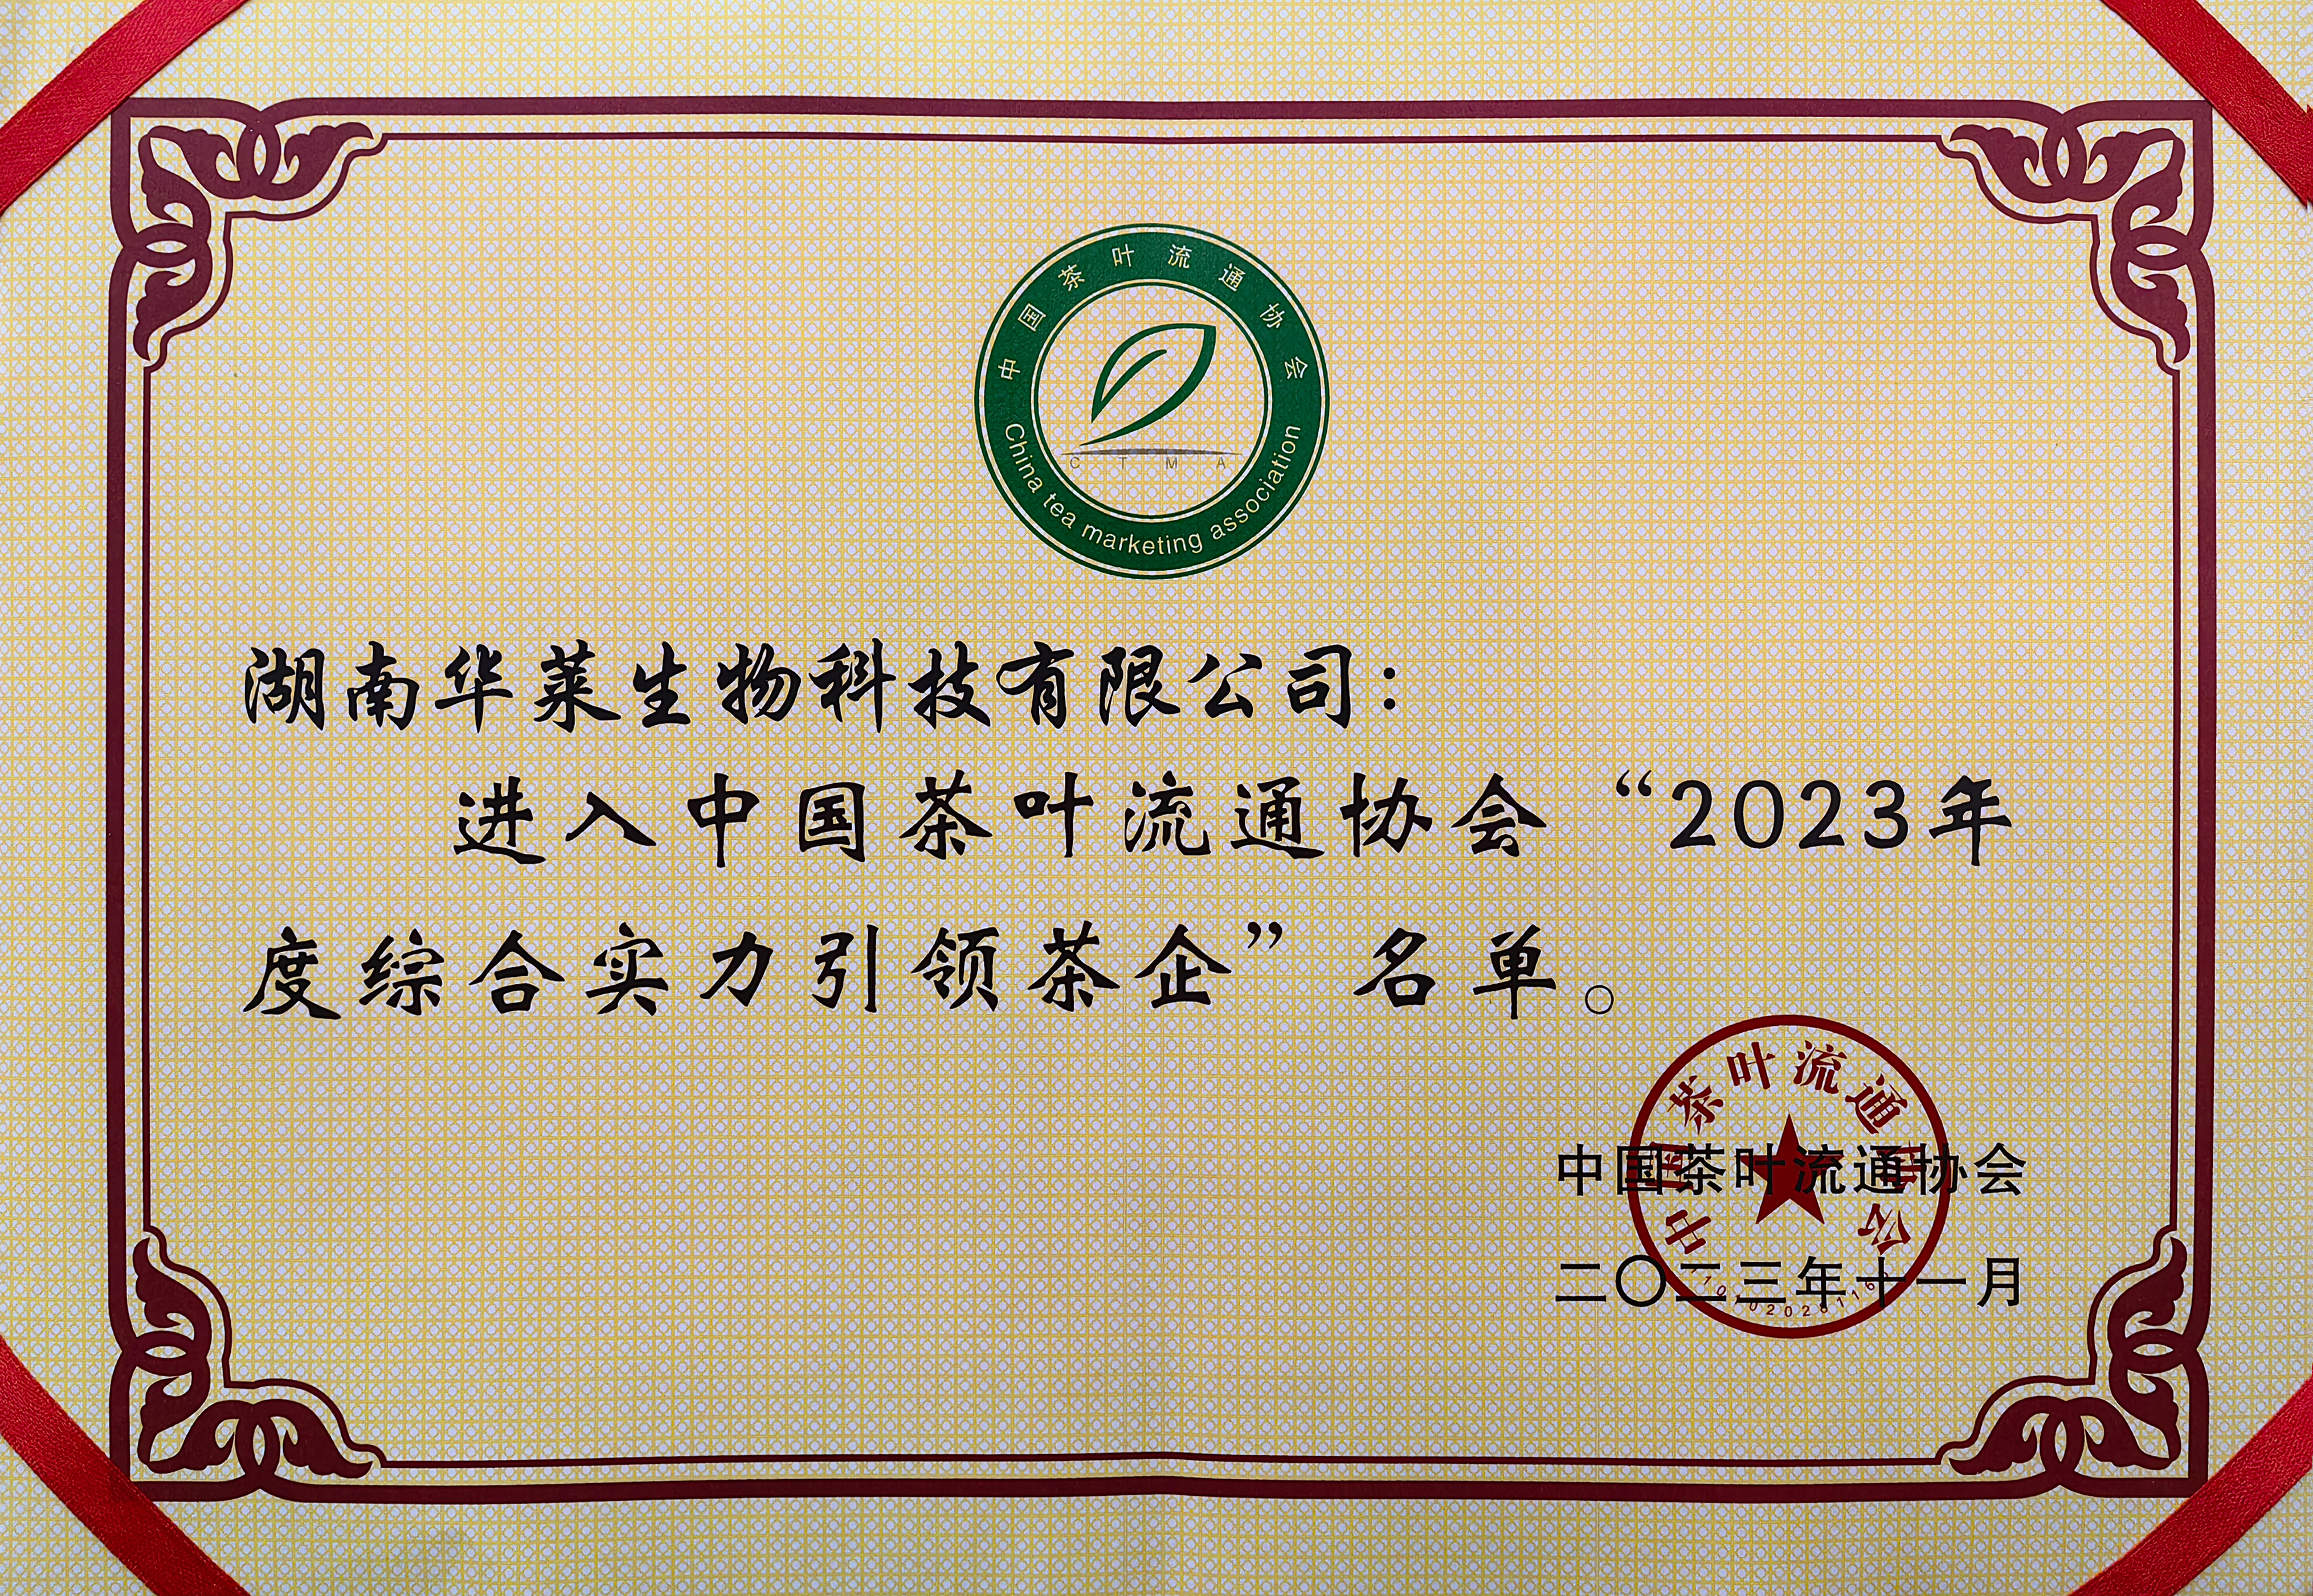 理想华莱荣获“2023年度综合实力引领茶企”等多个奖项